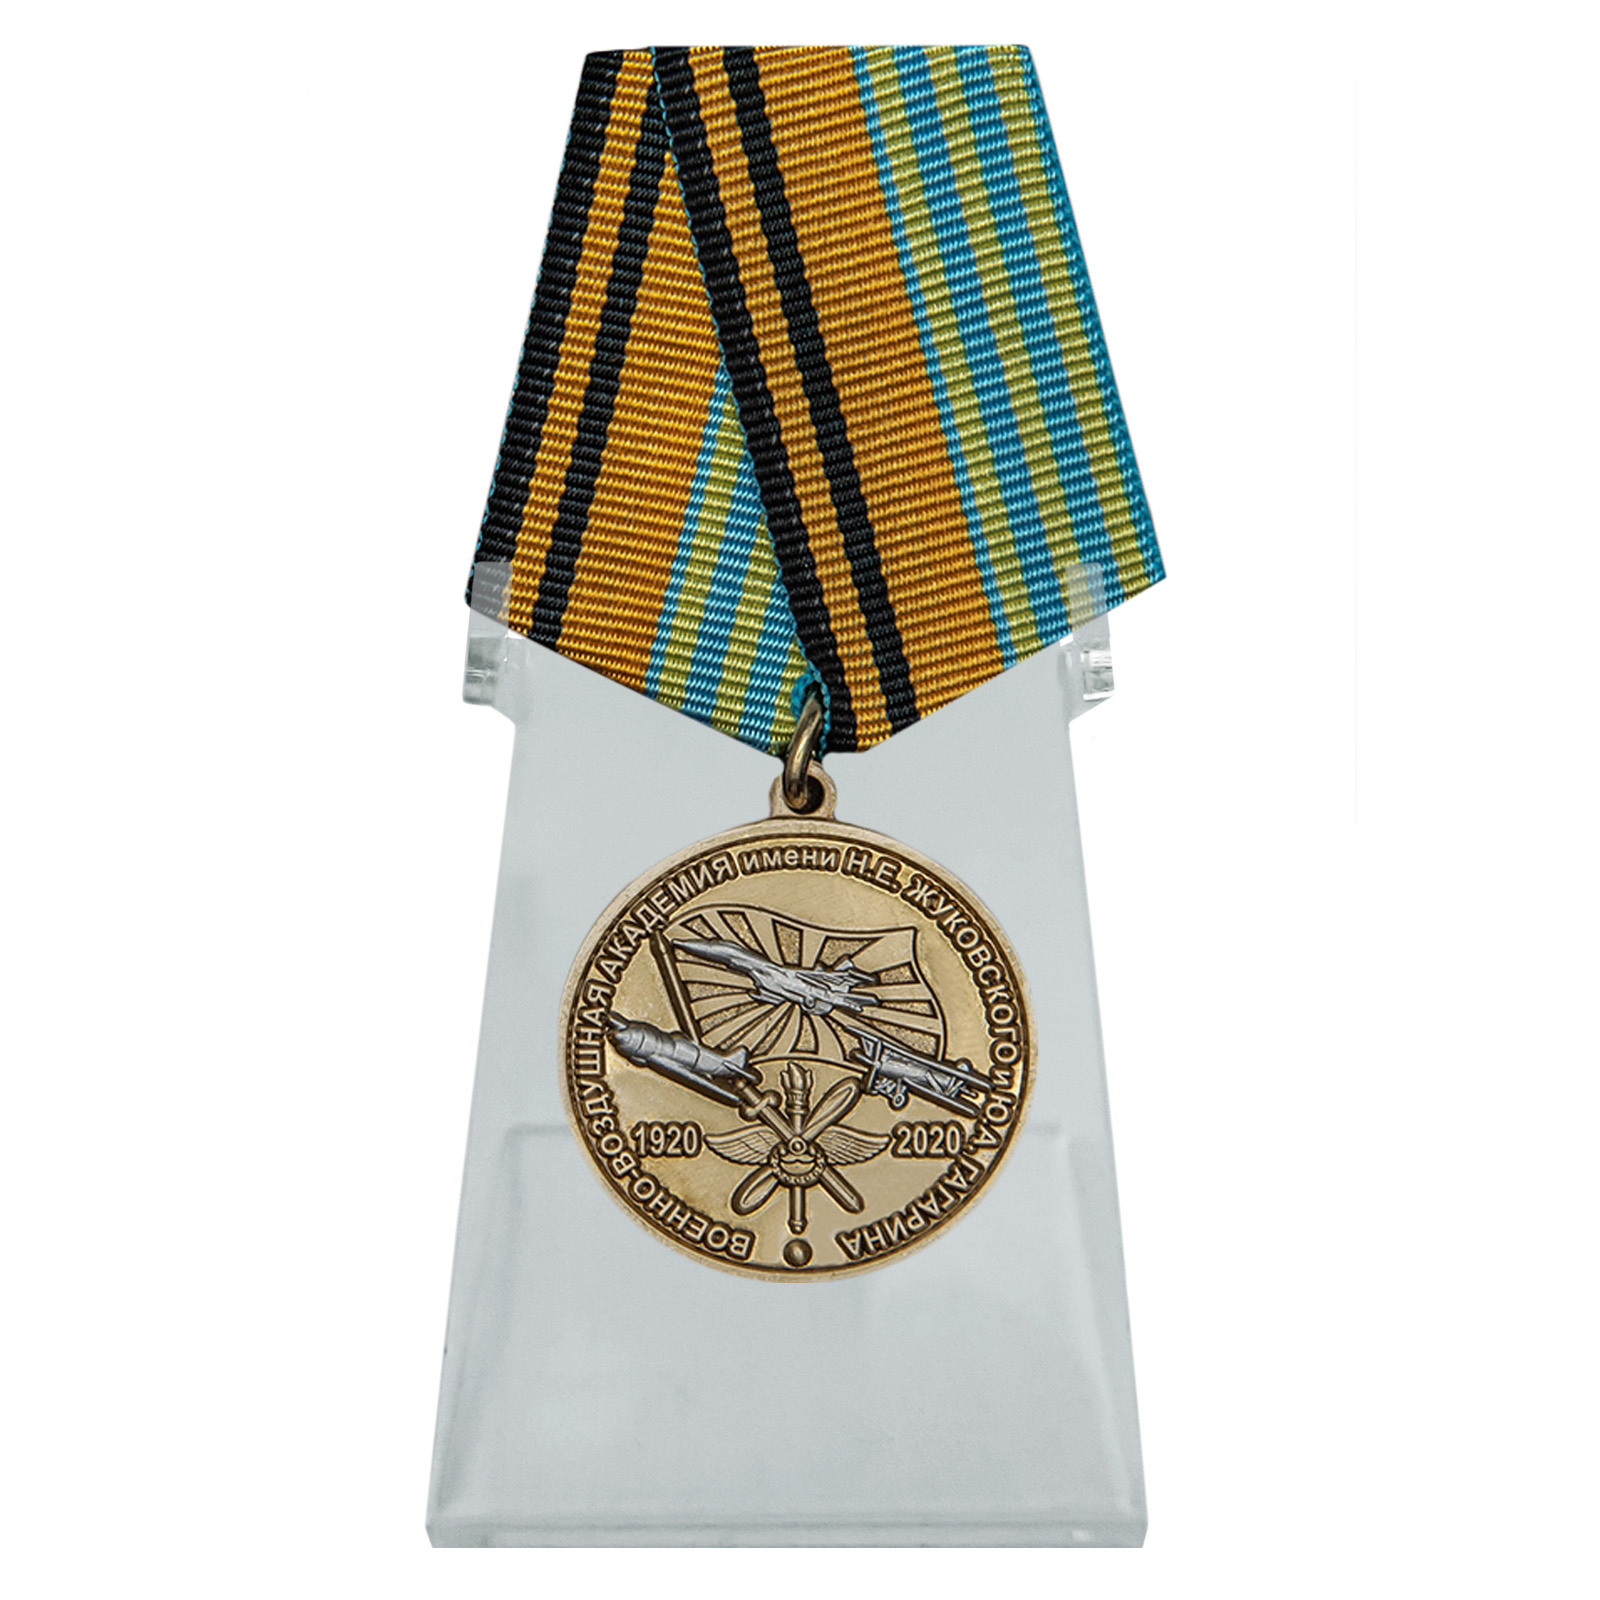 Купить медаль 100 лет Военно-воздушной академии им. Н.Е. Жуковского и Ю.А. Гагарина на подставке выгодно